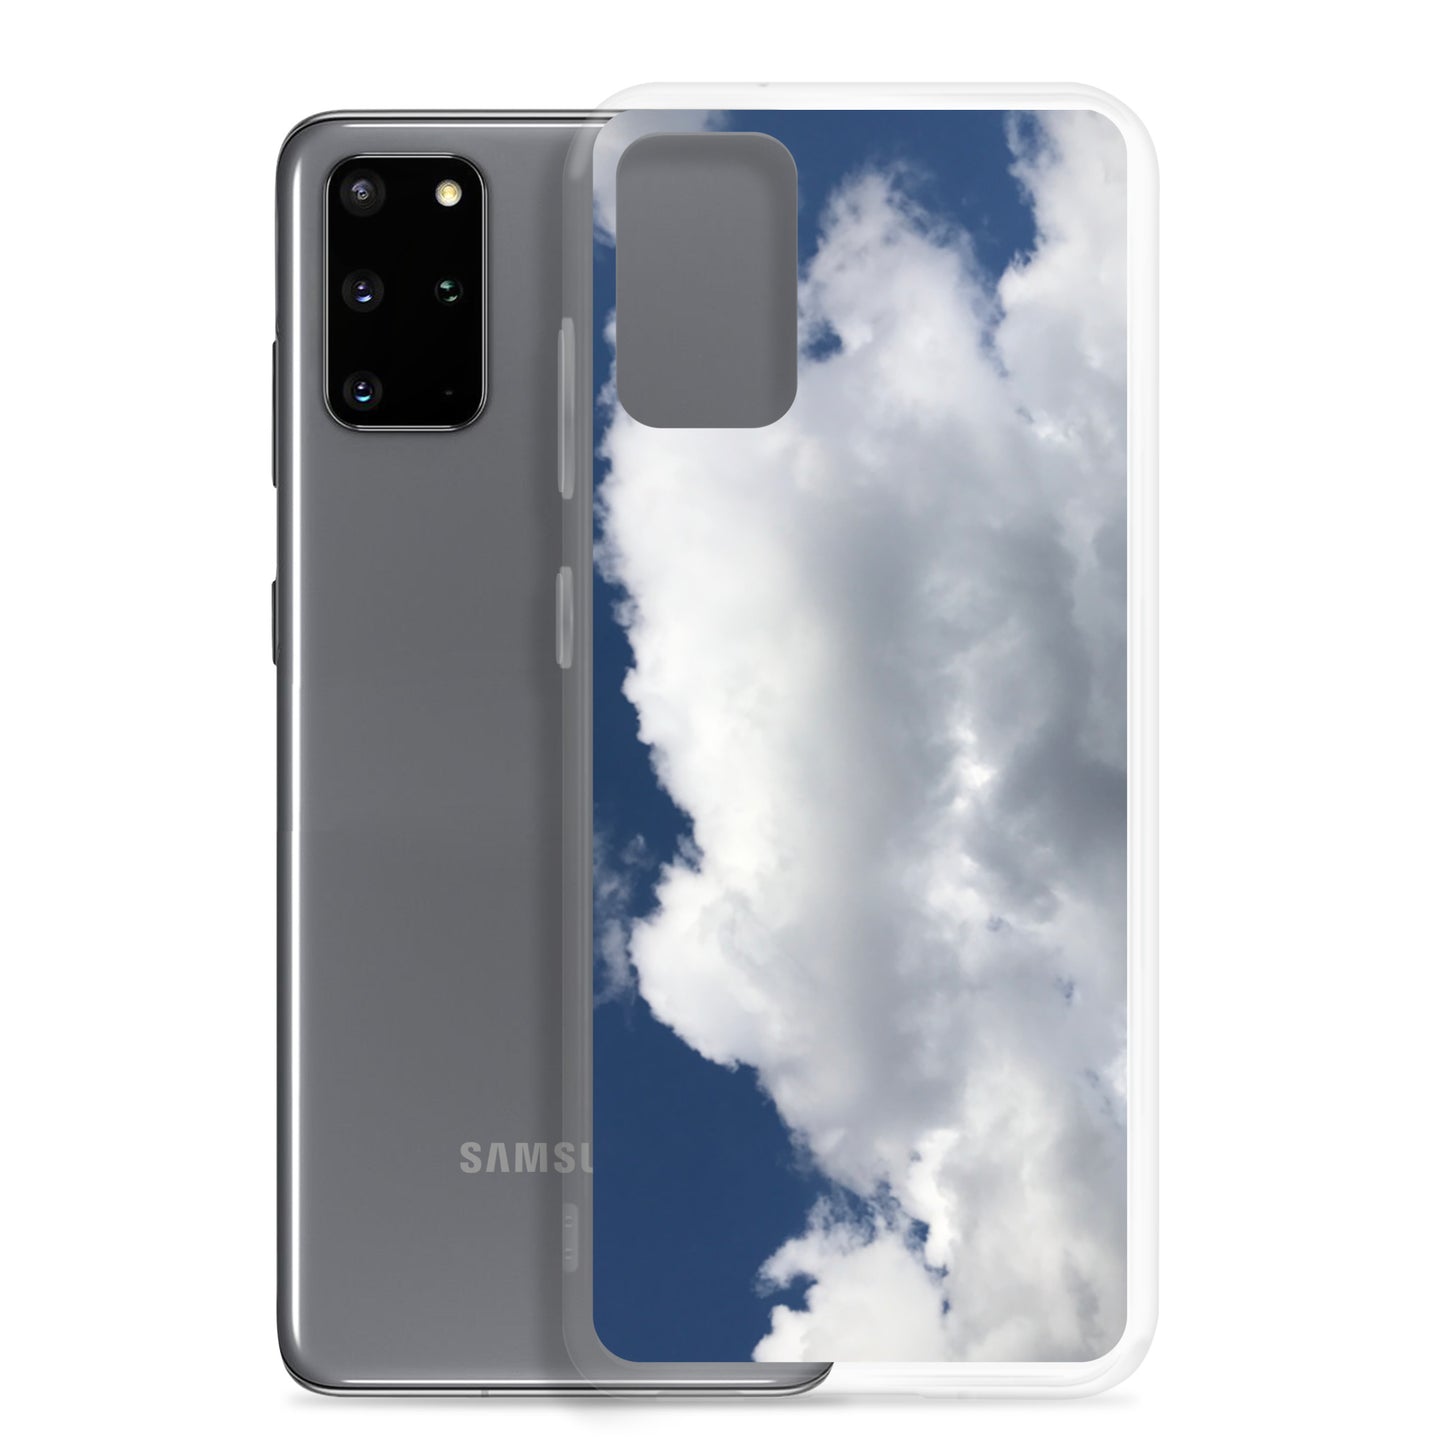 Clouds Samsung Case